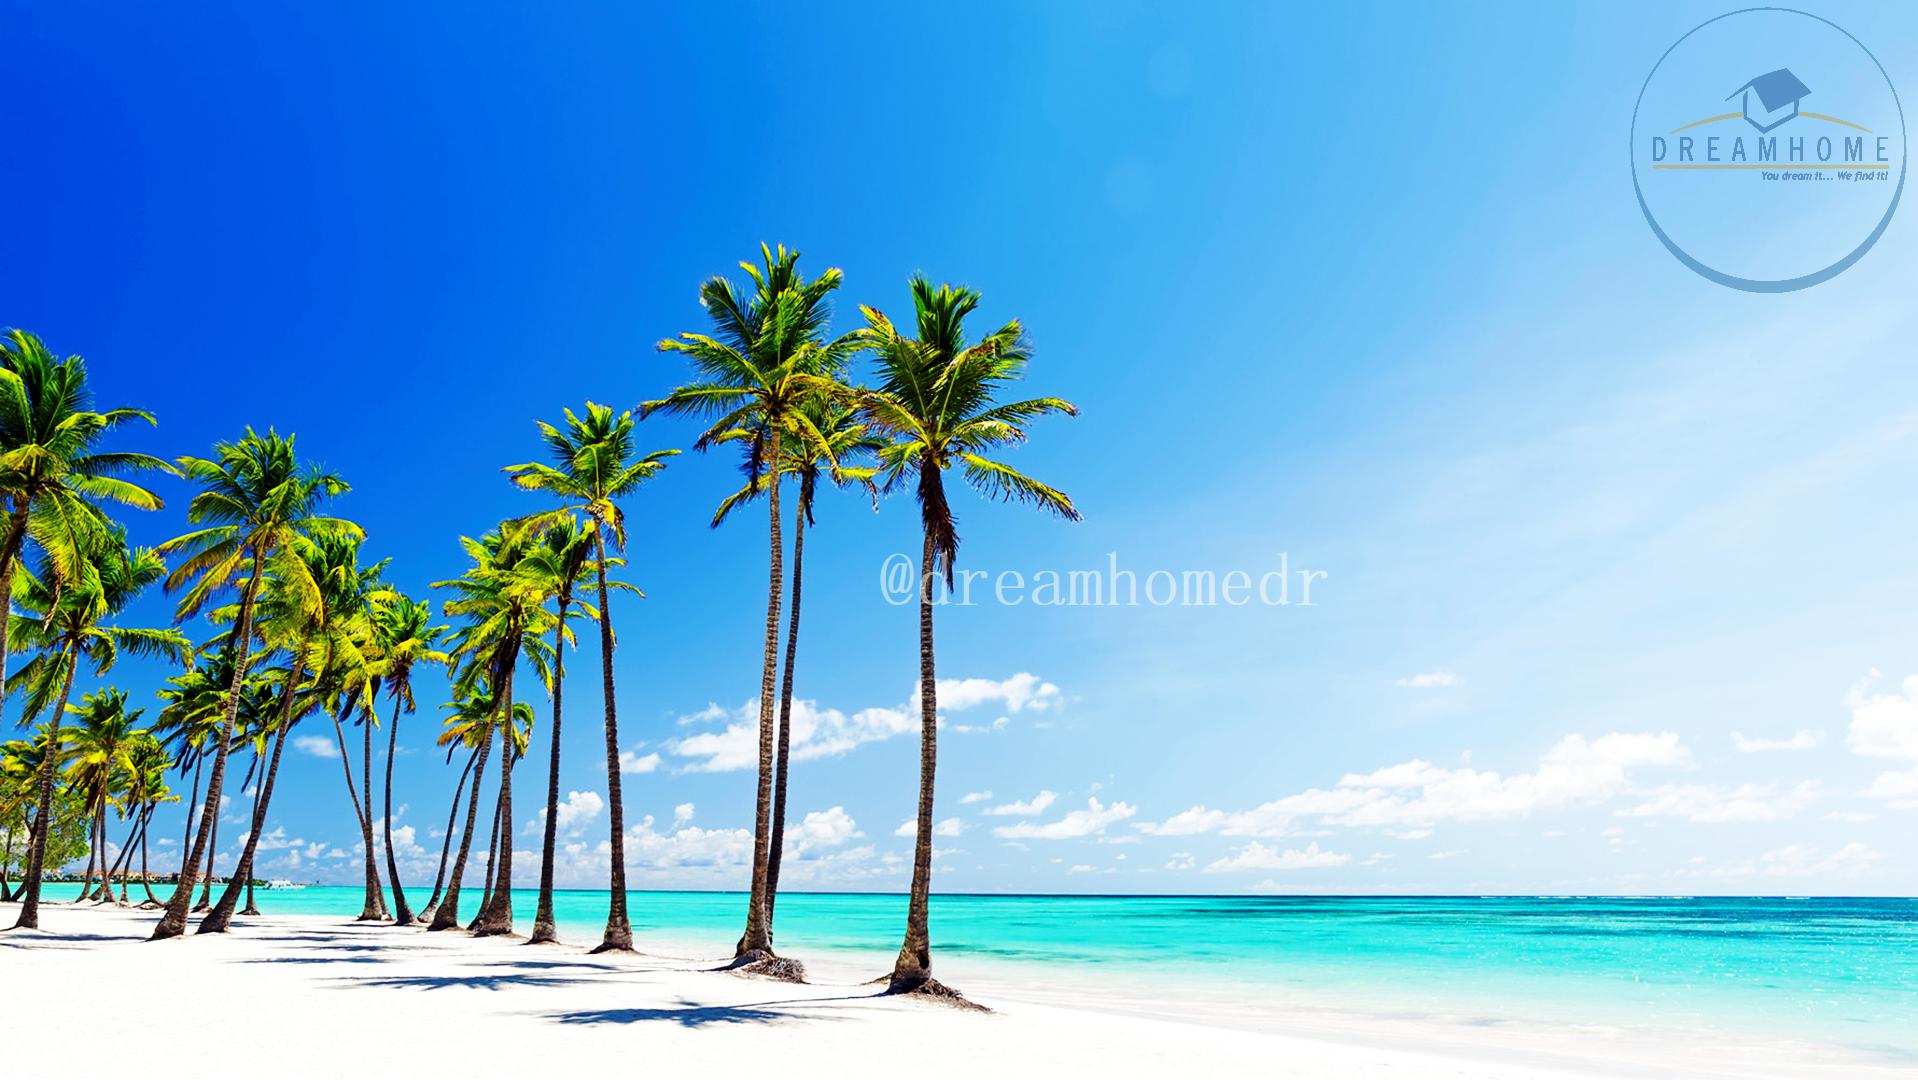 El lugar perfecto para vivir tus sueños en Punta Cana ID 3326 1